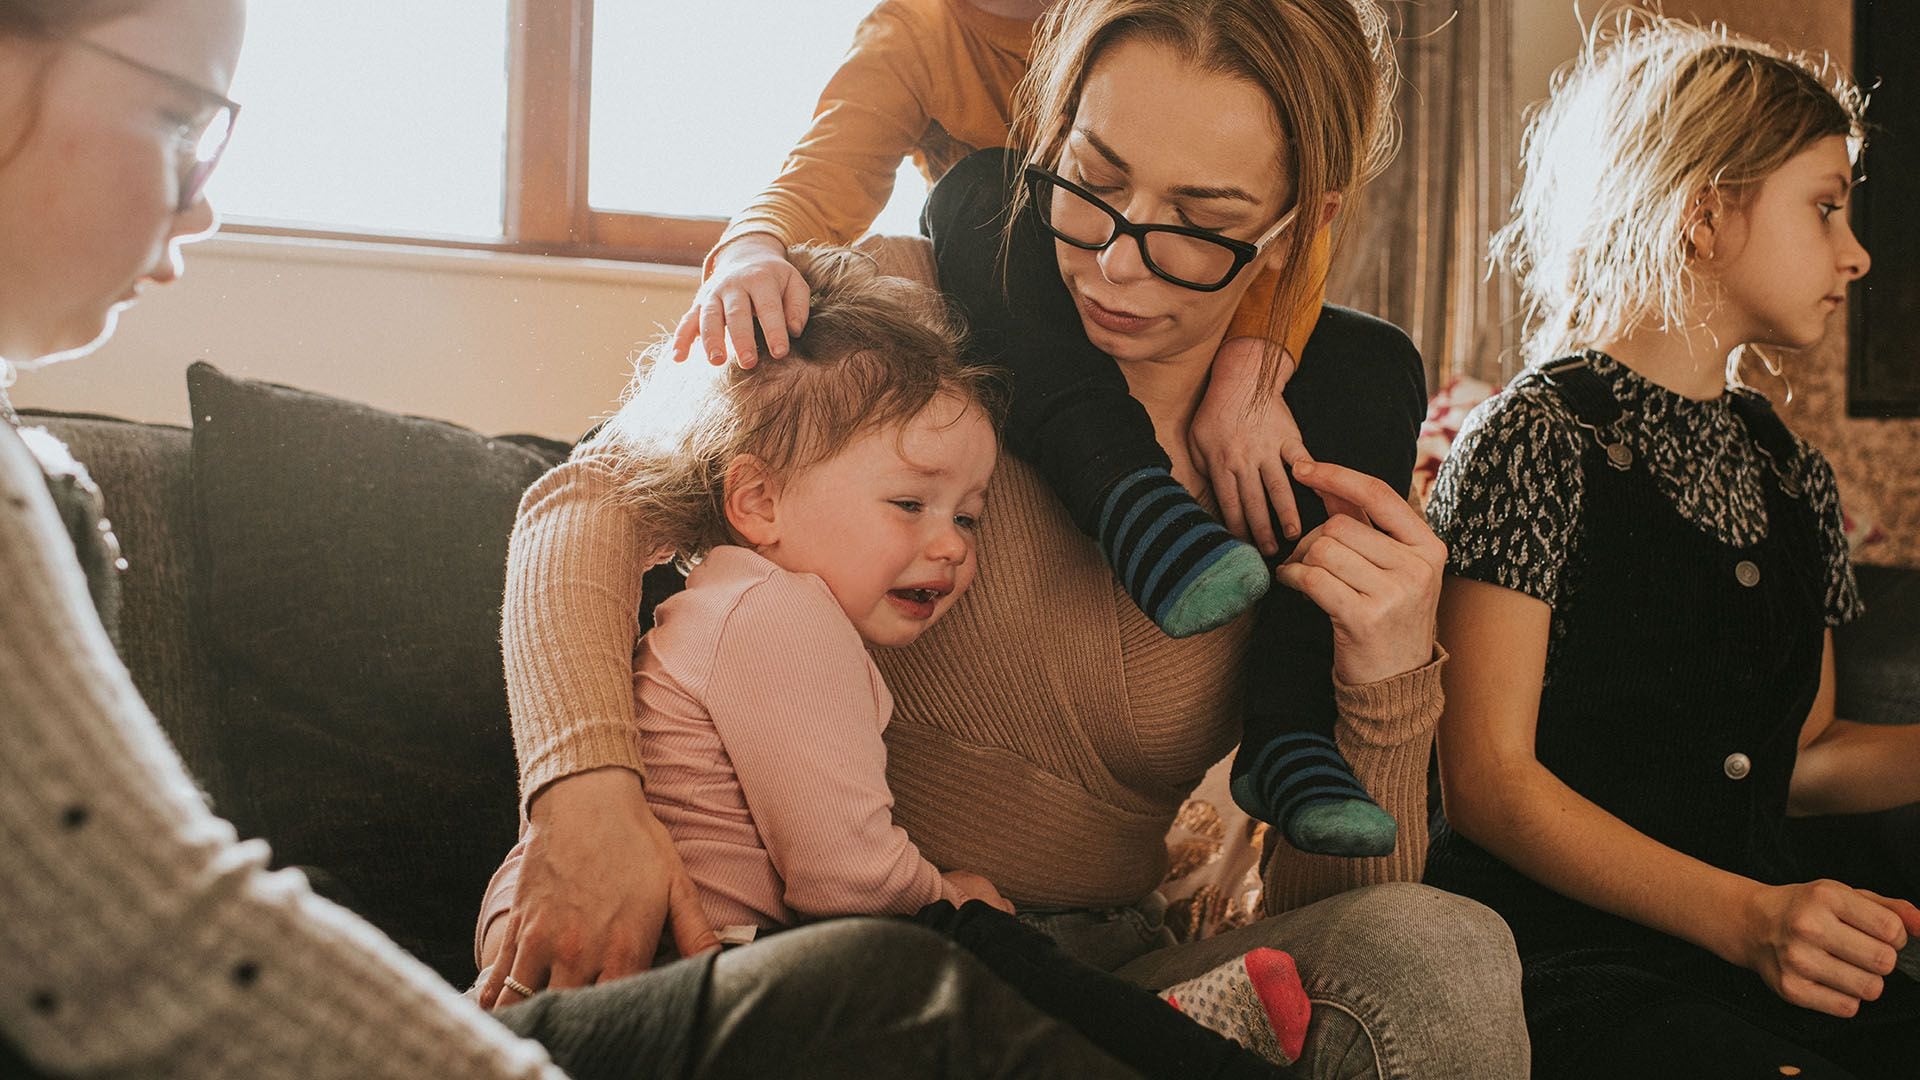 Los investigadores comprobaron la depresión de una madre o un padre puede volver tóxica la vida familiar (Getty Images)